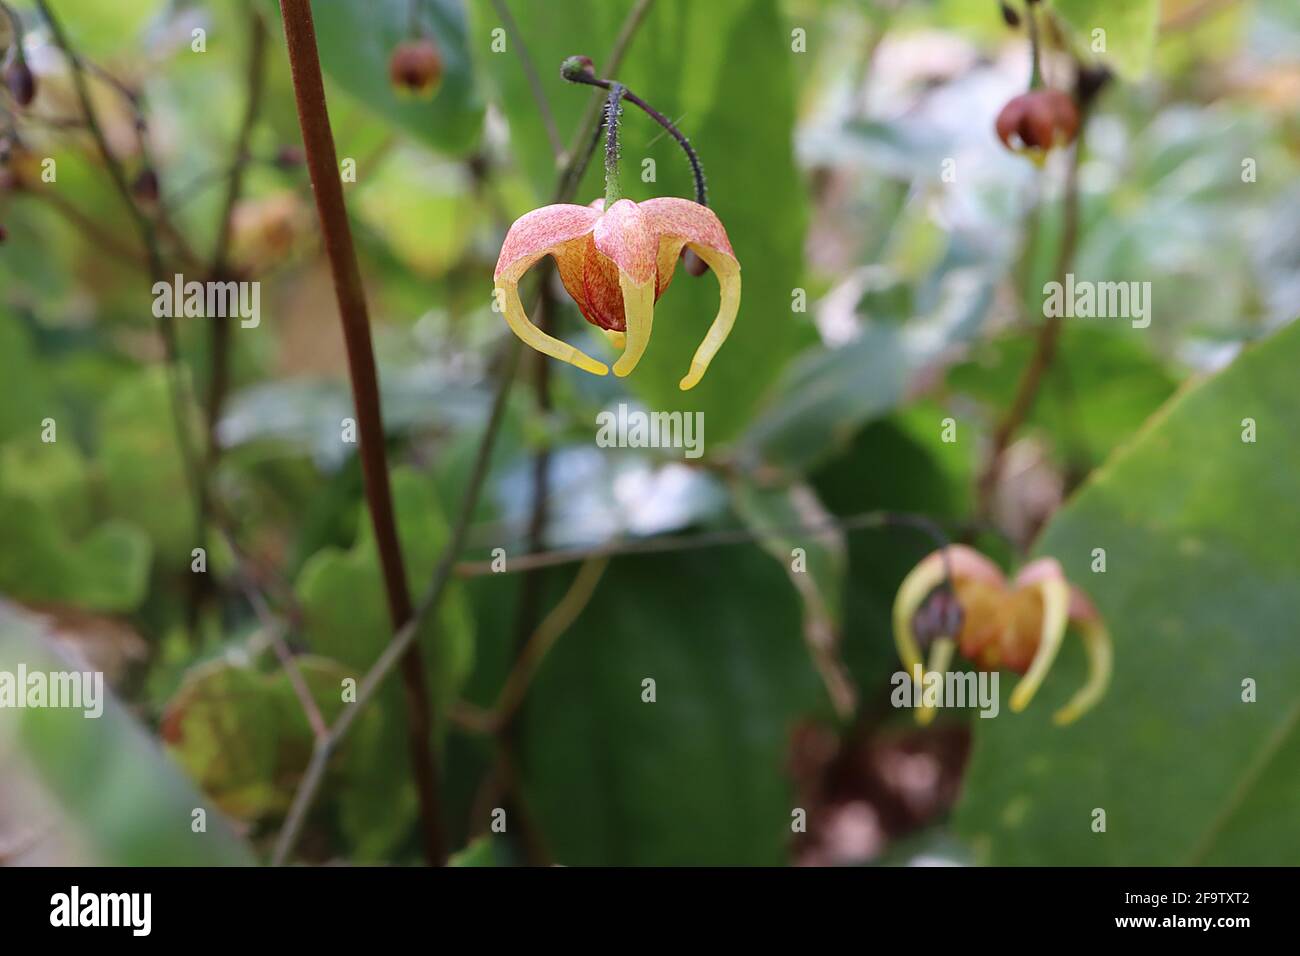 Epimedium wushanense x flavum barrenmoût jaunâtre – fleurs pendantes rouges marbrées avec des couleurs jaunes crochetées, avril, Angleterre, Royaume-Uni Banque D'Images